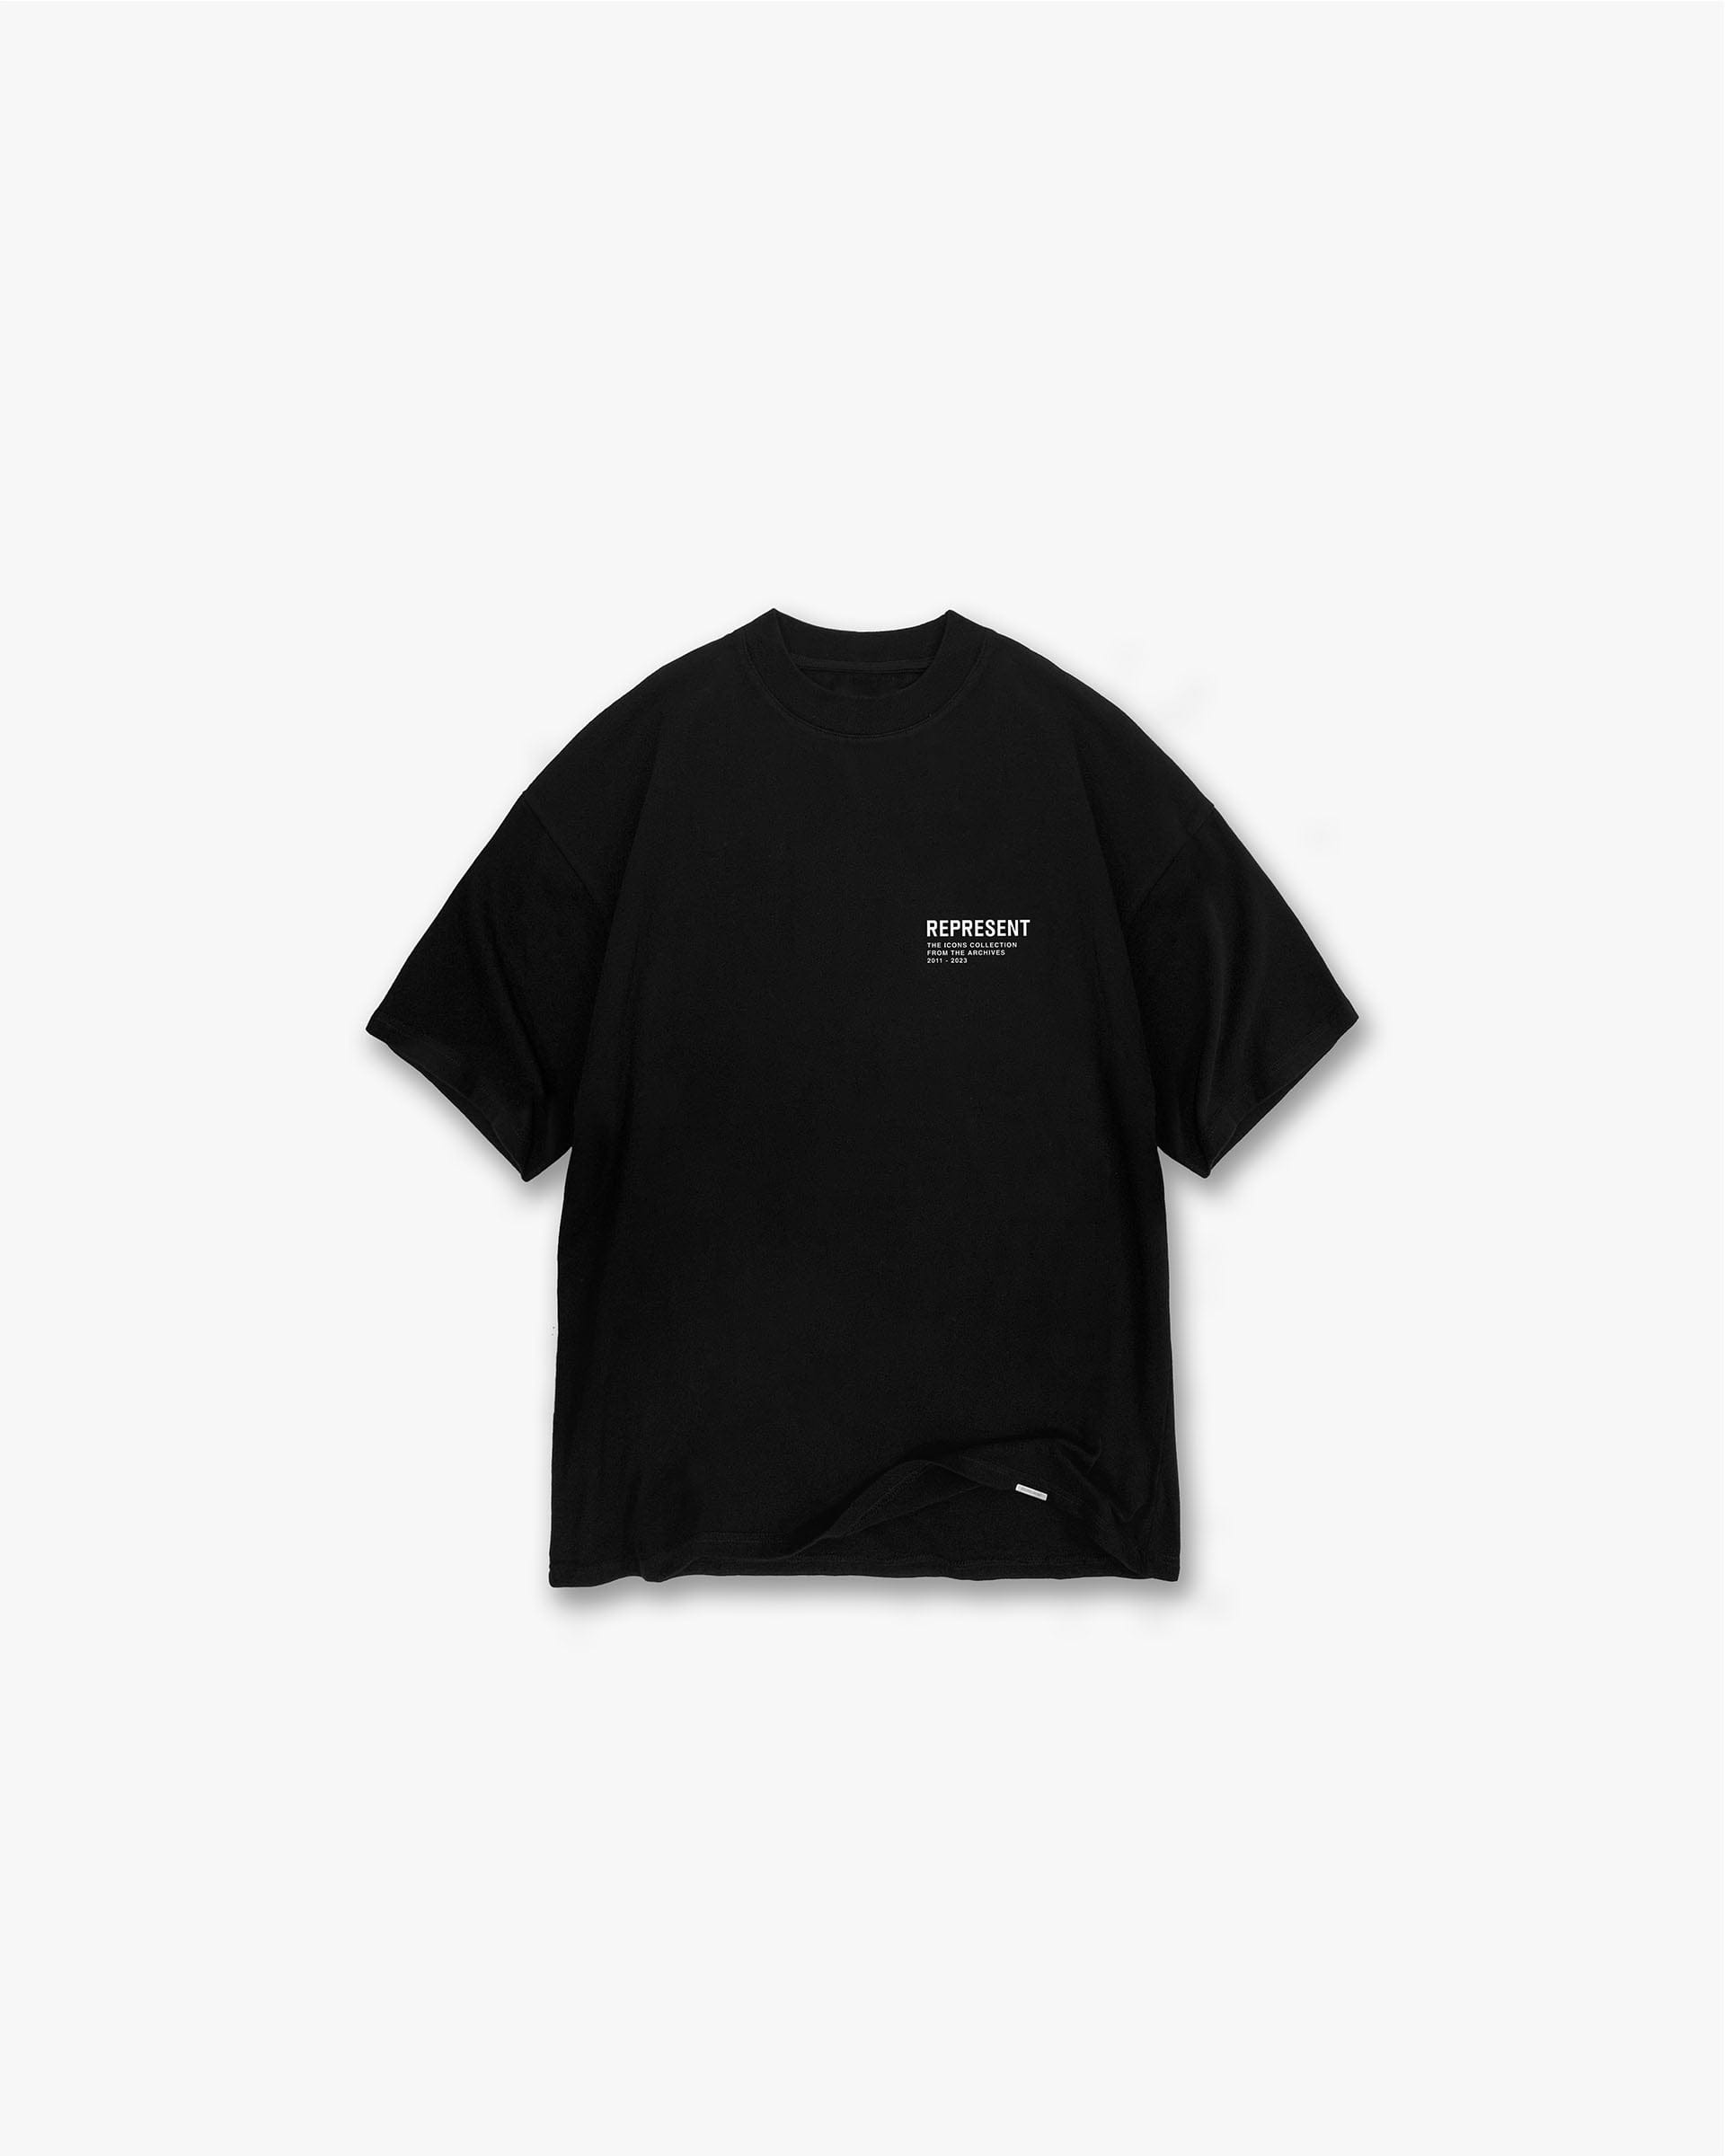 Monochrome Icons T-Shirt - Black